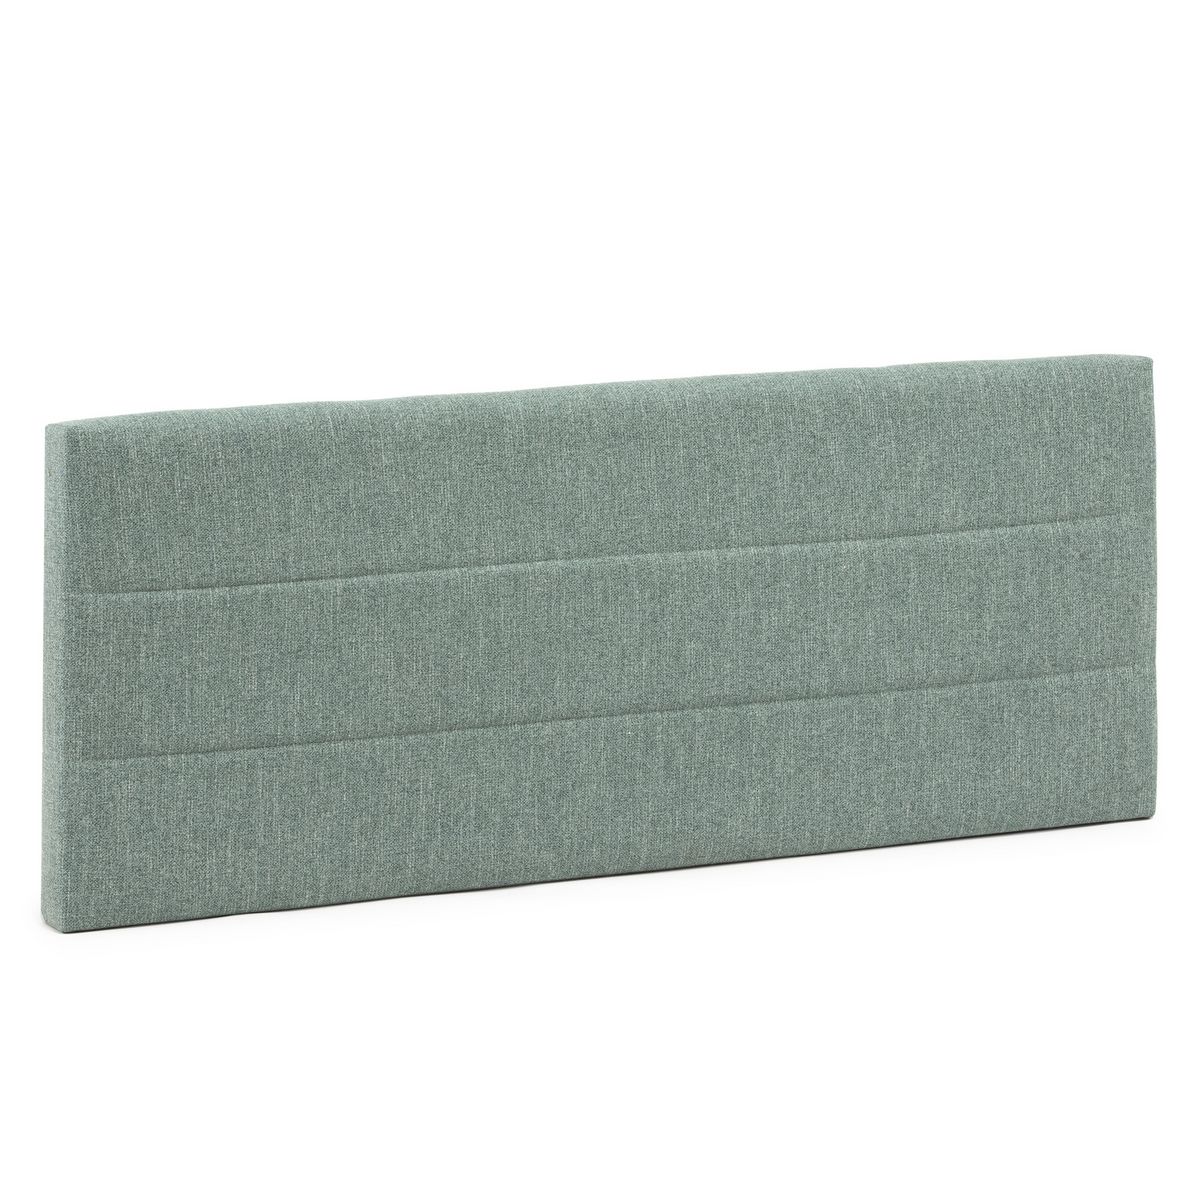 MARCKONFORT Tête de lit tapissée Miconos 160x60 cm Couleur Verte, 8 cm d'épaisseur